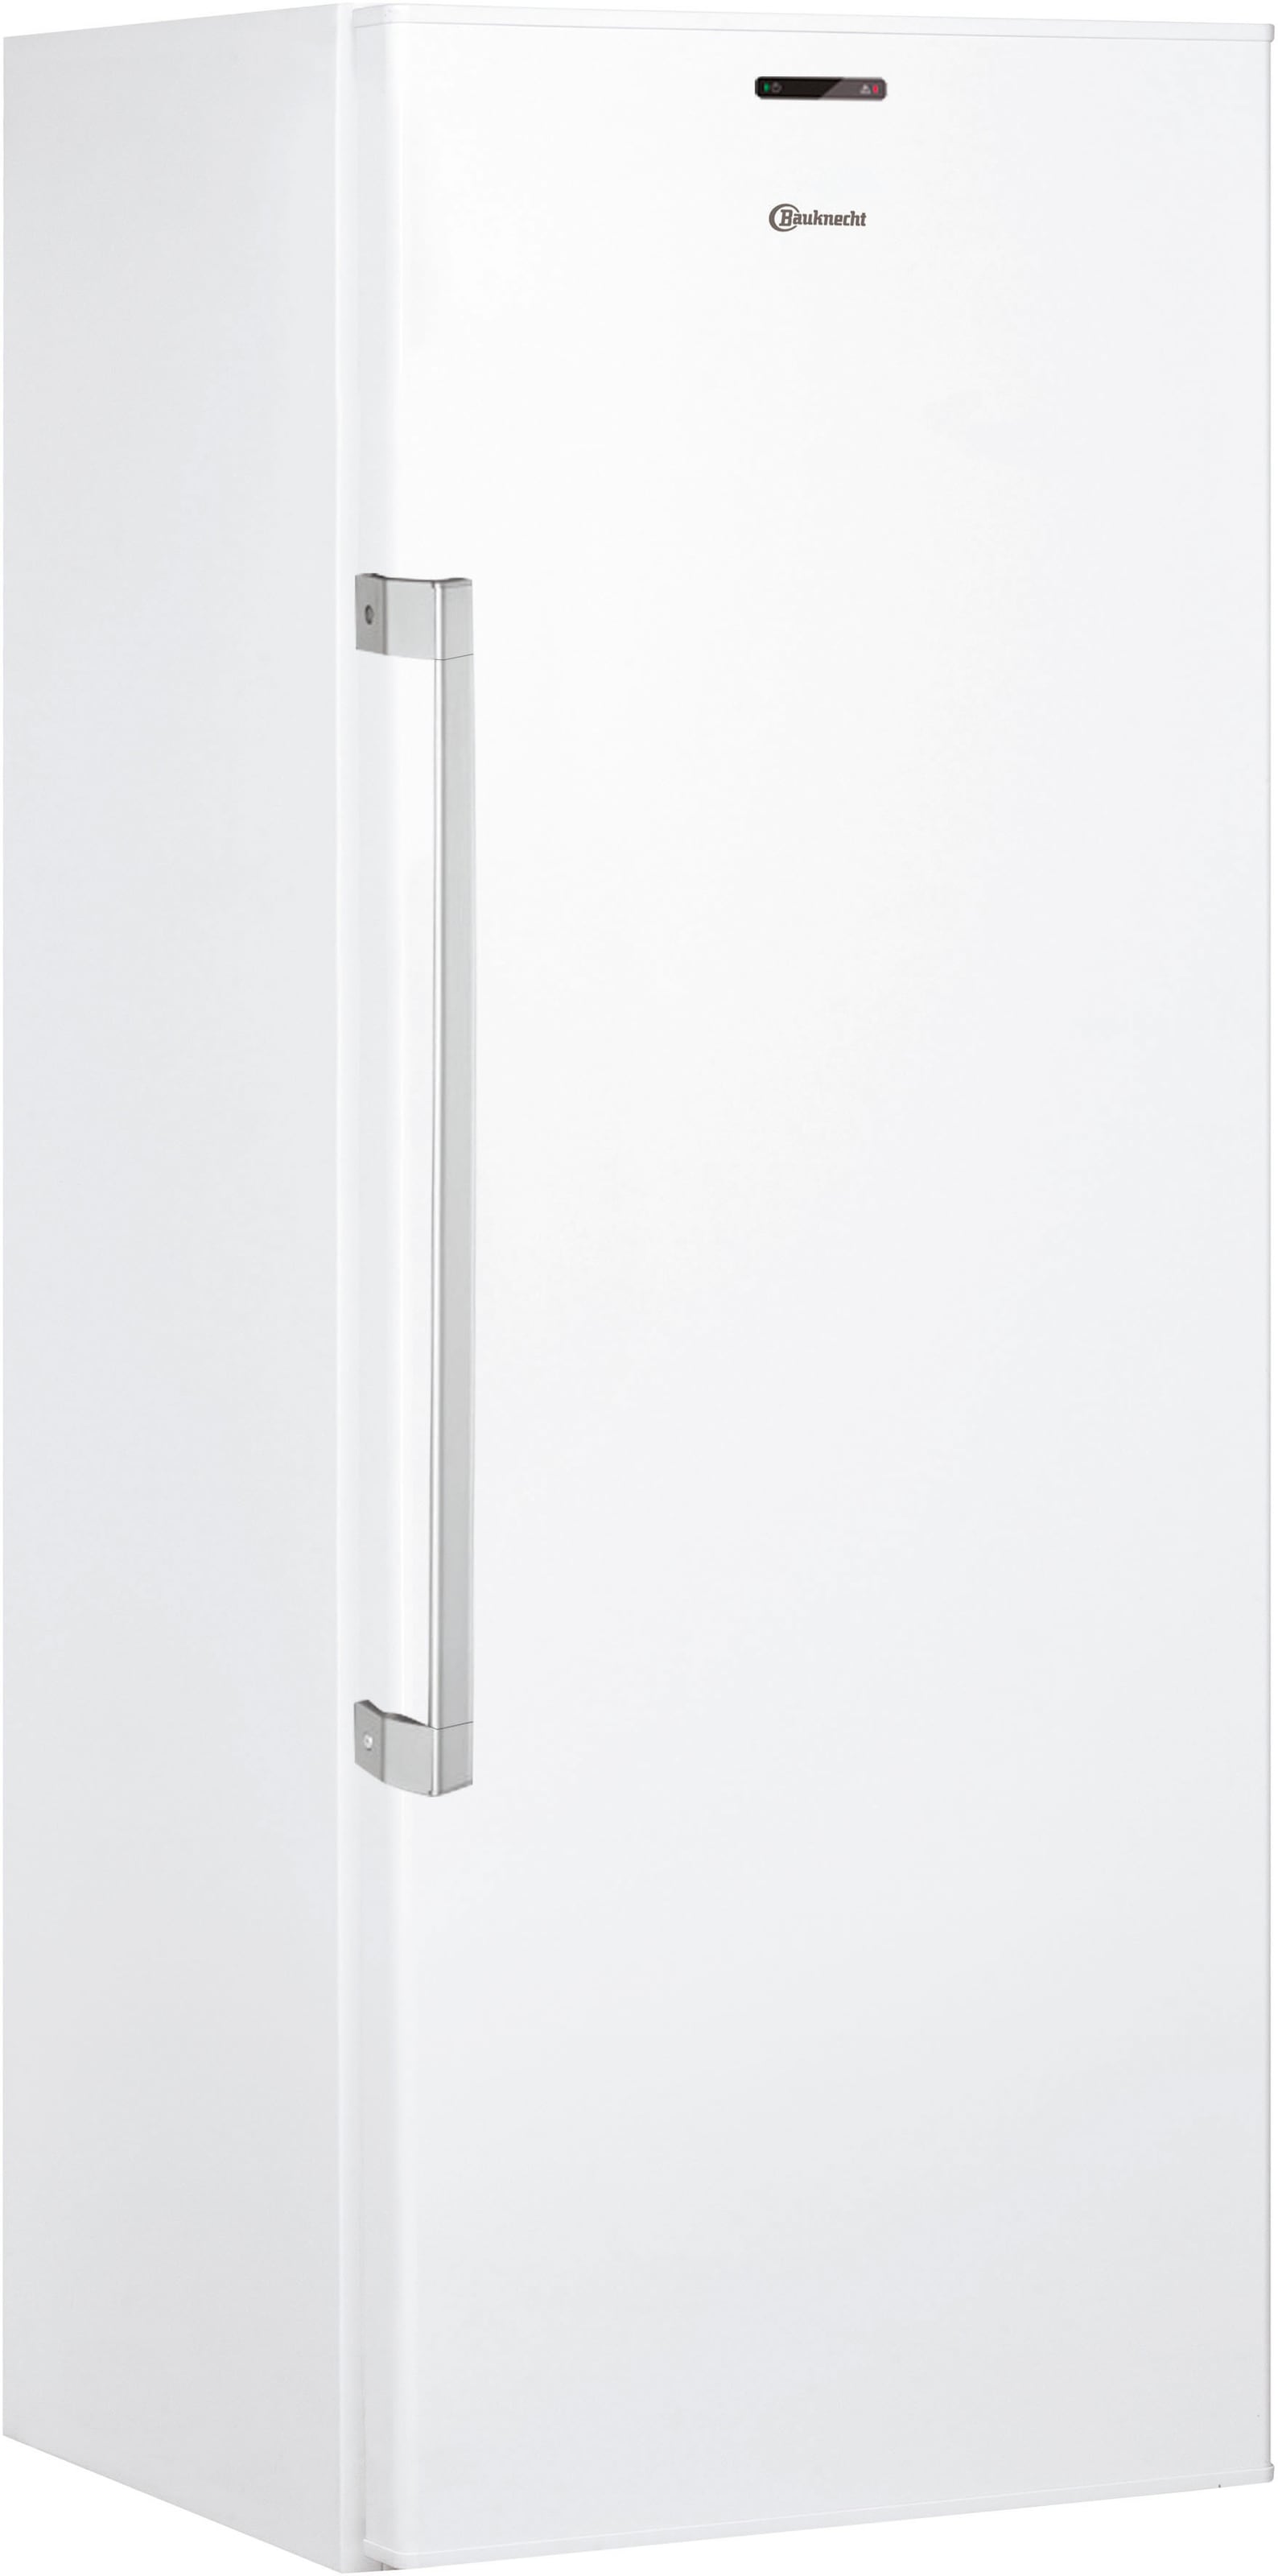 Kühlschrank »KR 17G4 WS 2«, KR 17G4 WS 2, 167 cm hoch, 59,5 cm breit